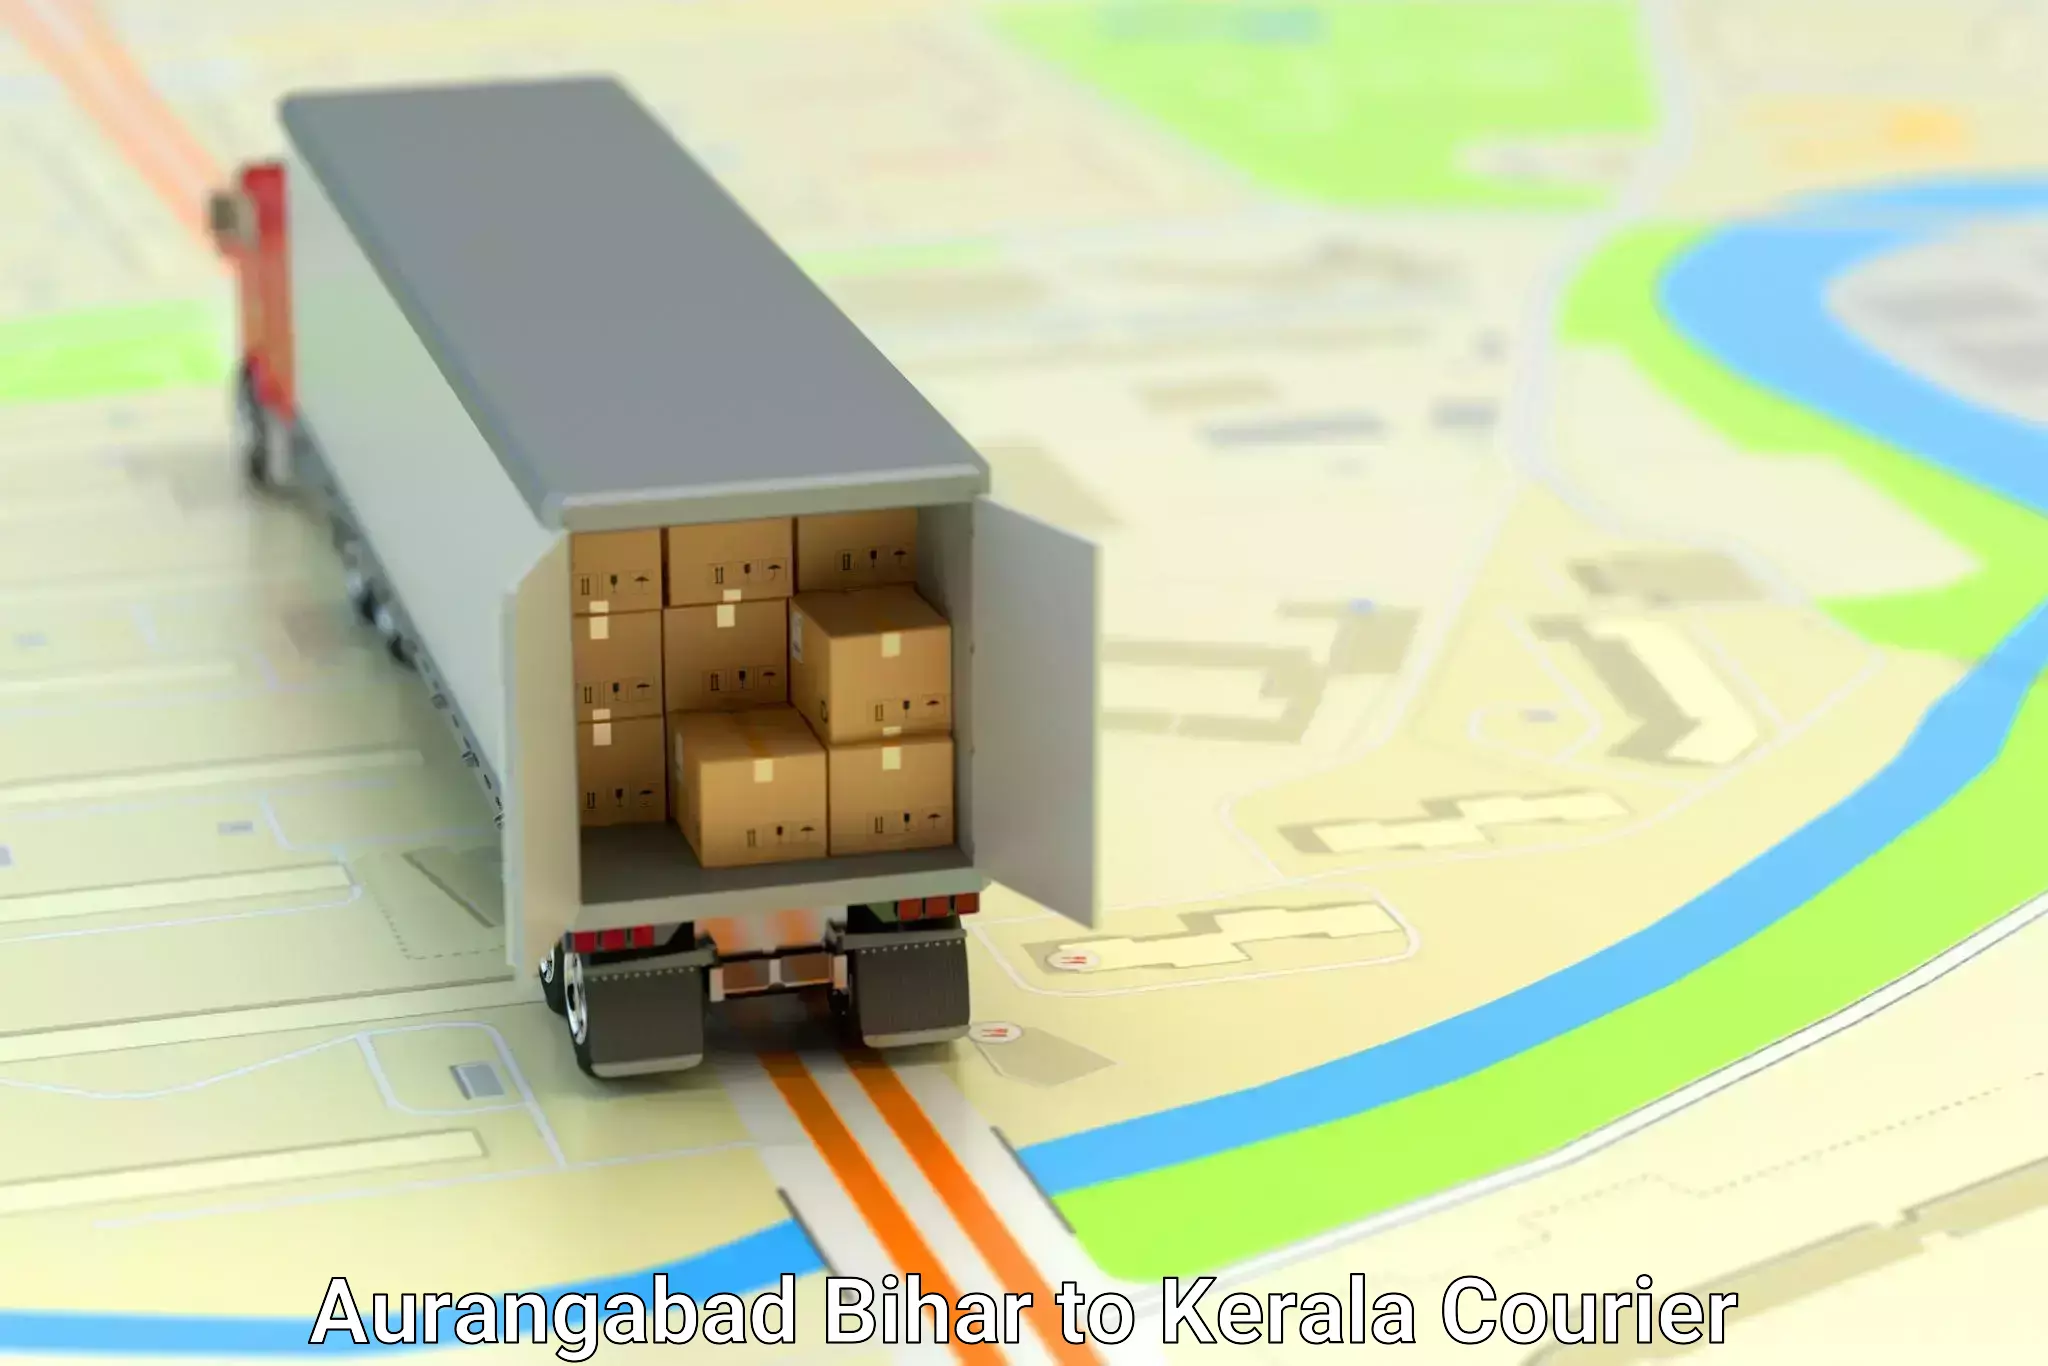 Furniture transport and logistics Aurangabad Bihar to Kerala